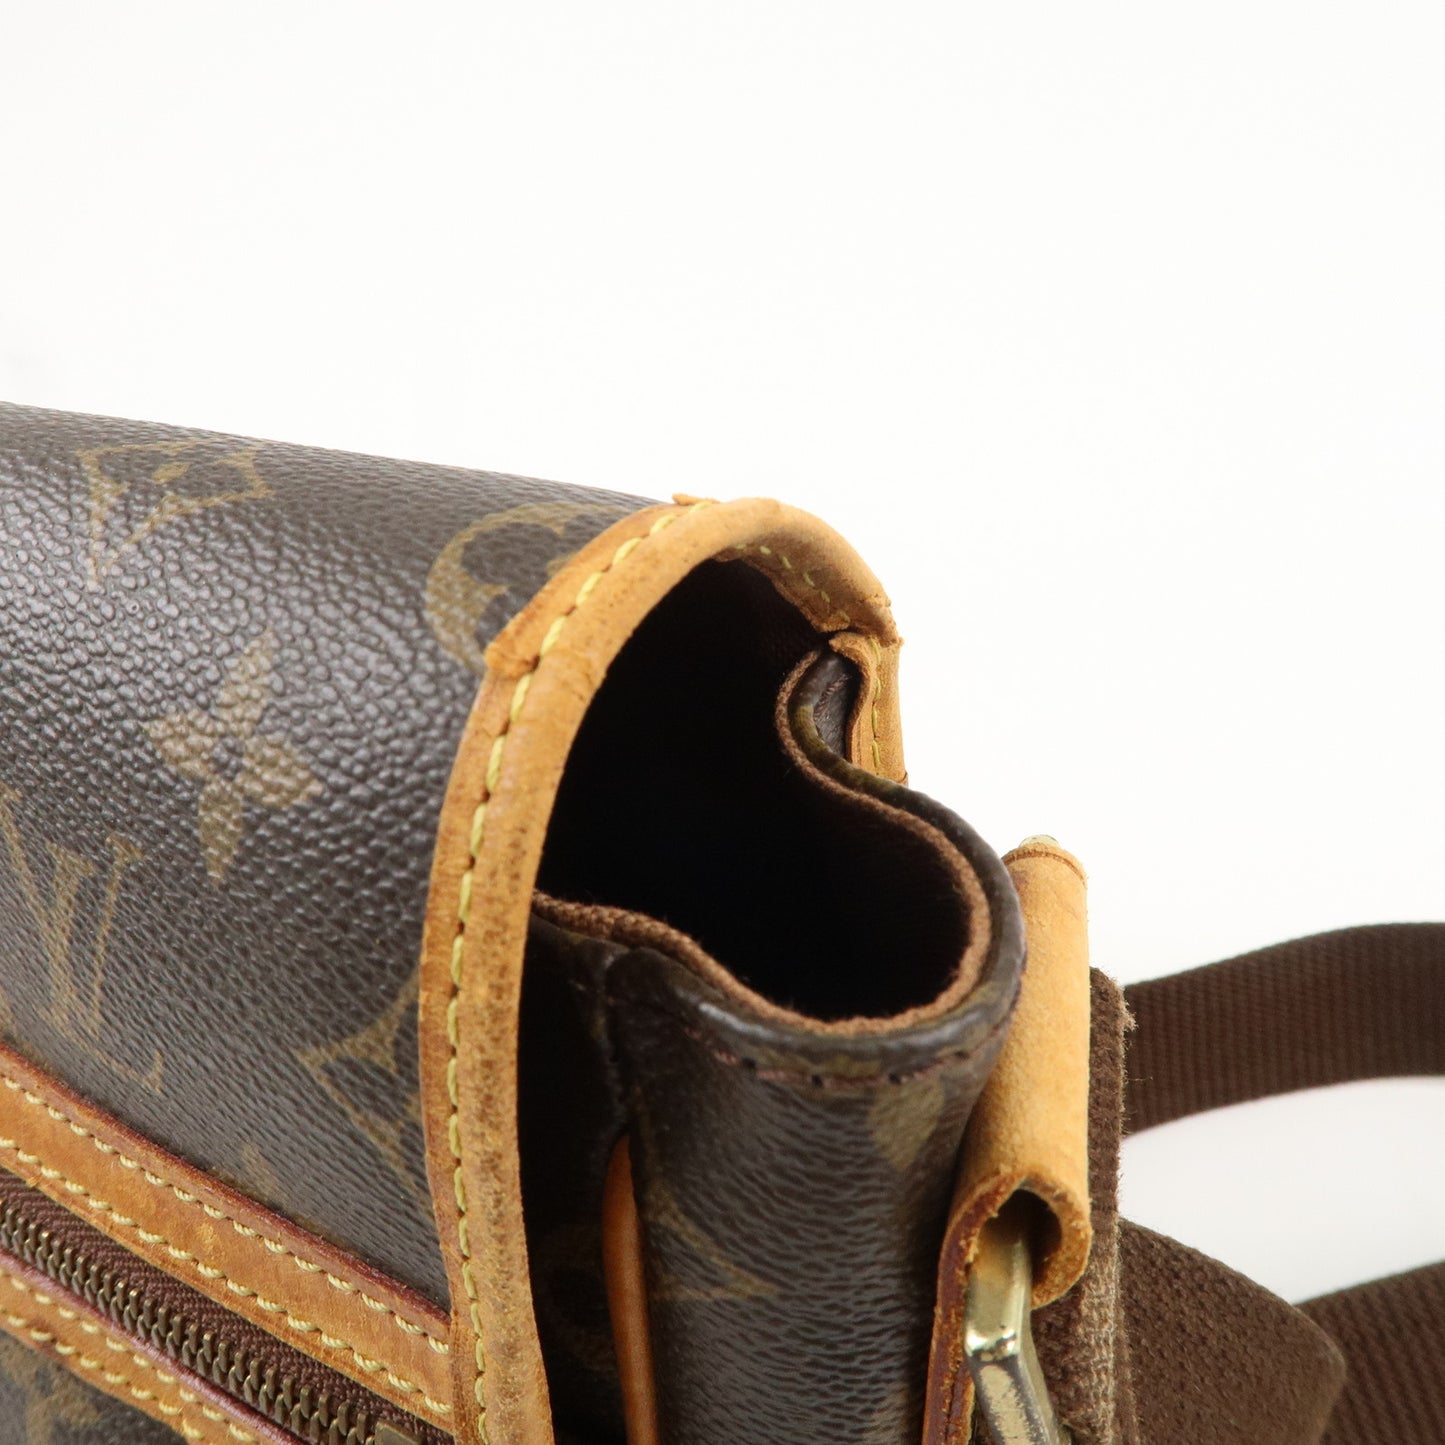 Louis Vuitton Monogram Messenger Bosphore PM Shoulder Bag M40106